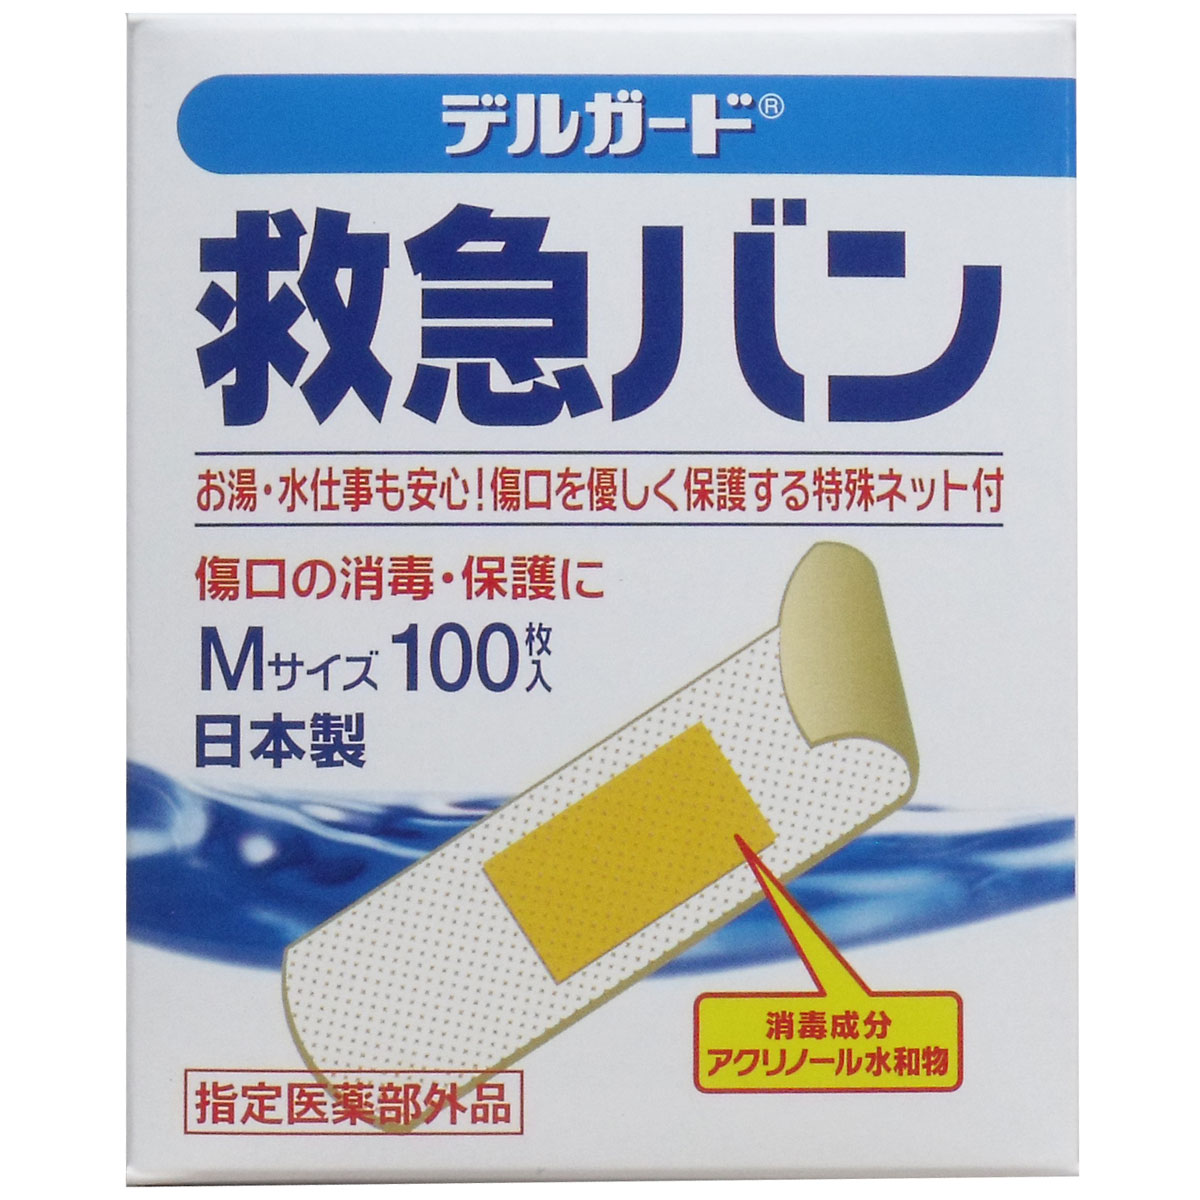 日本良品 デルガード 救急バン 半透明タイプ Mサイズ 100枚入